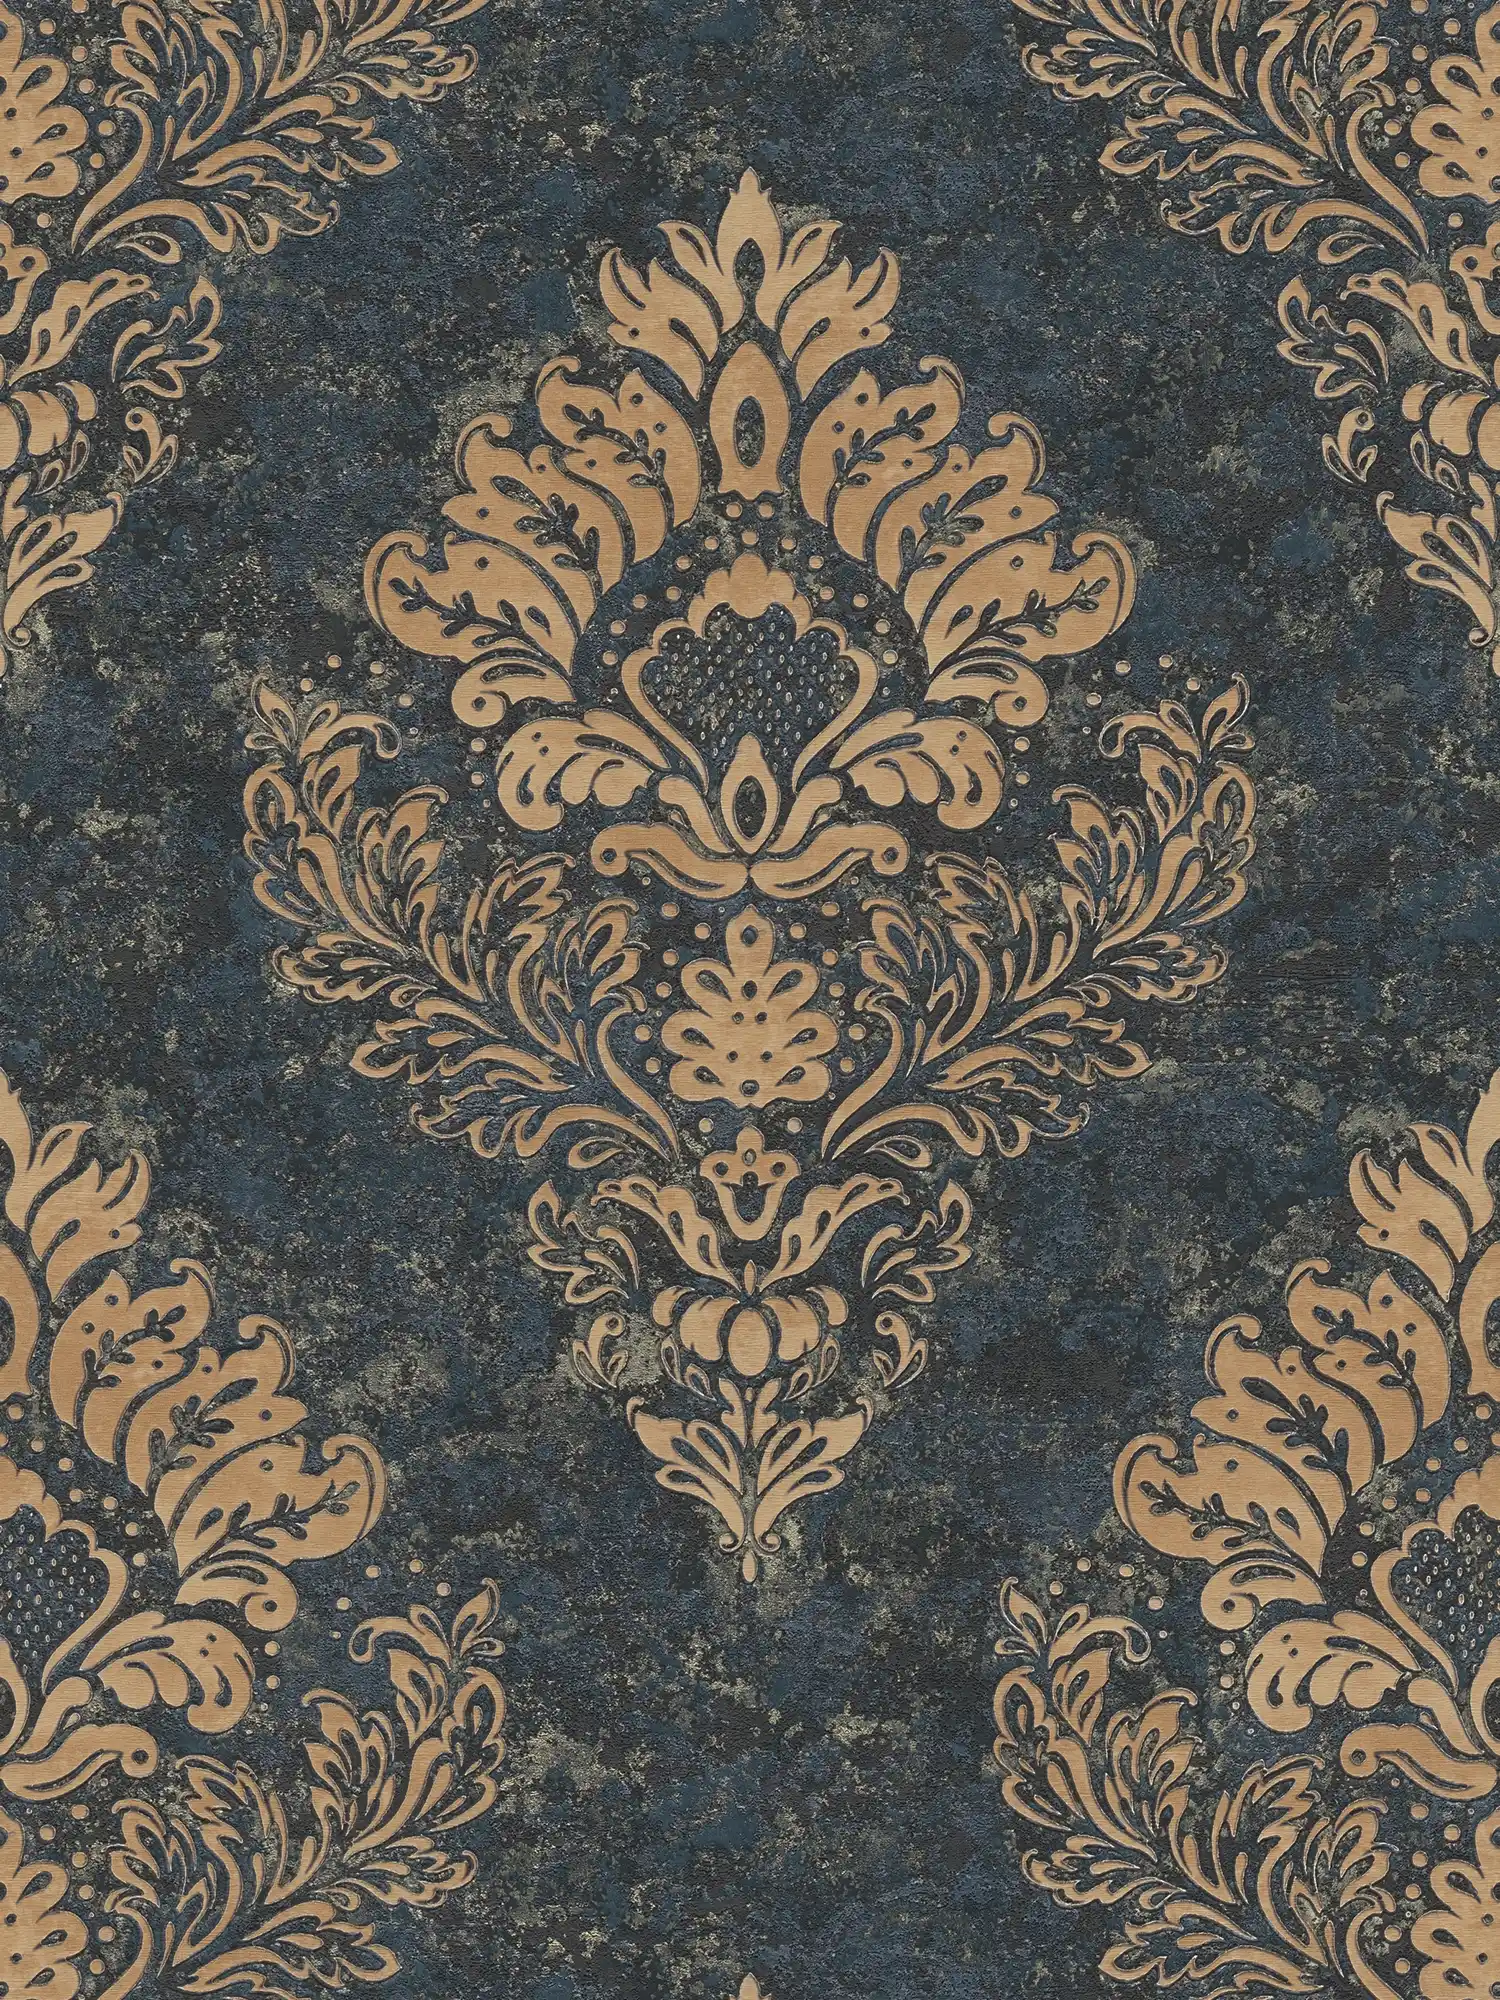 Ornamentaal behang met bloemmotief & goudeffect - beige, blauw, bruin
